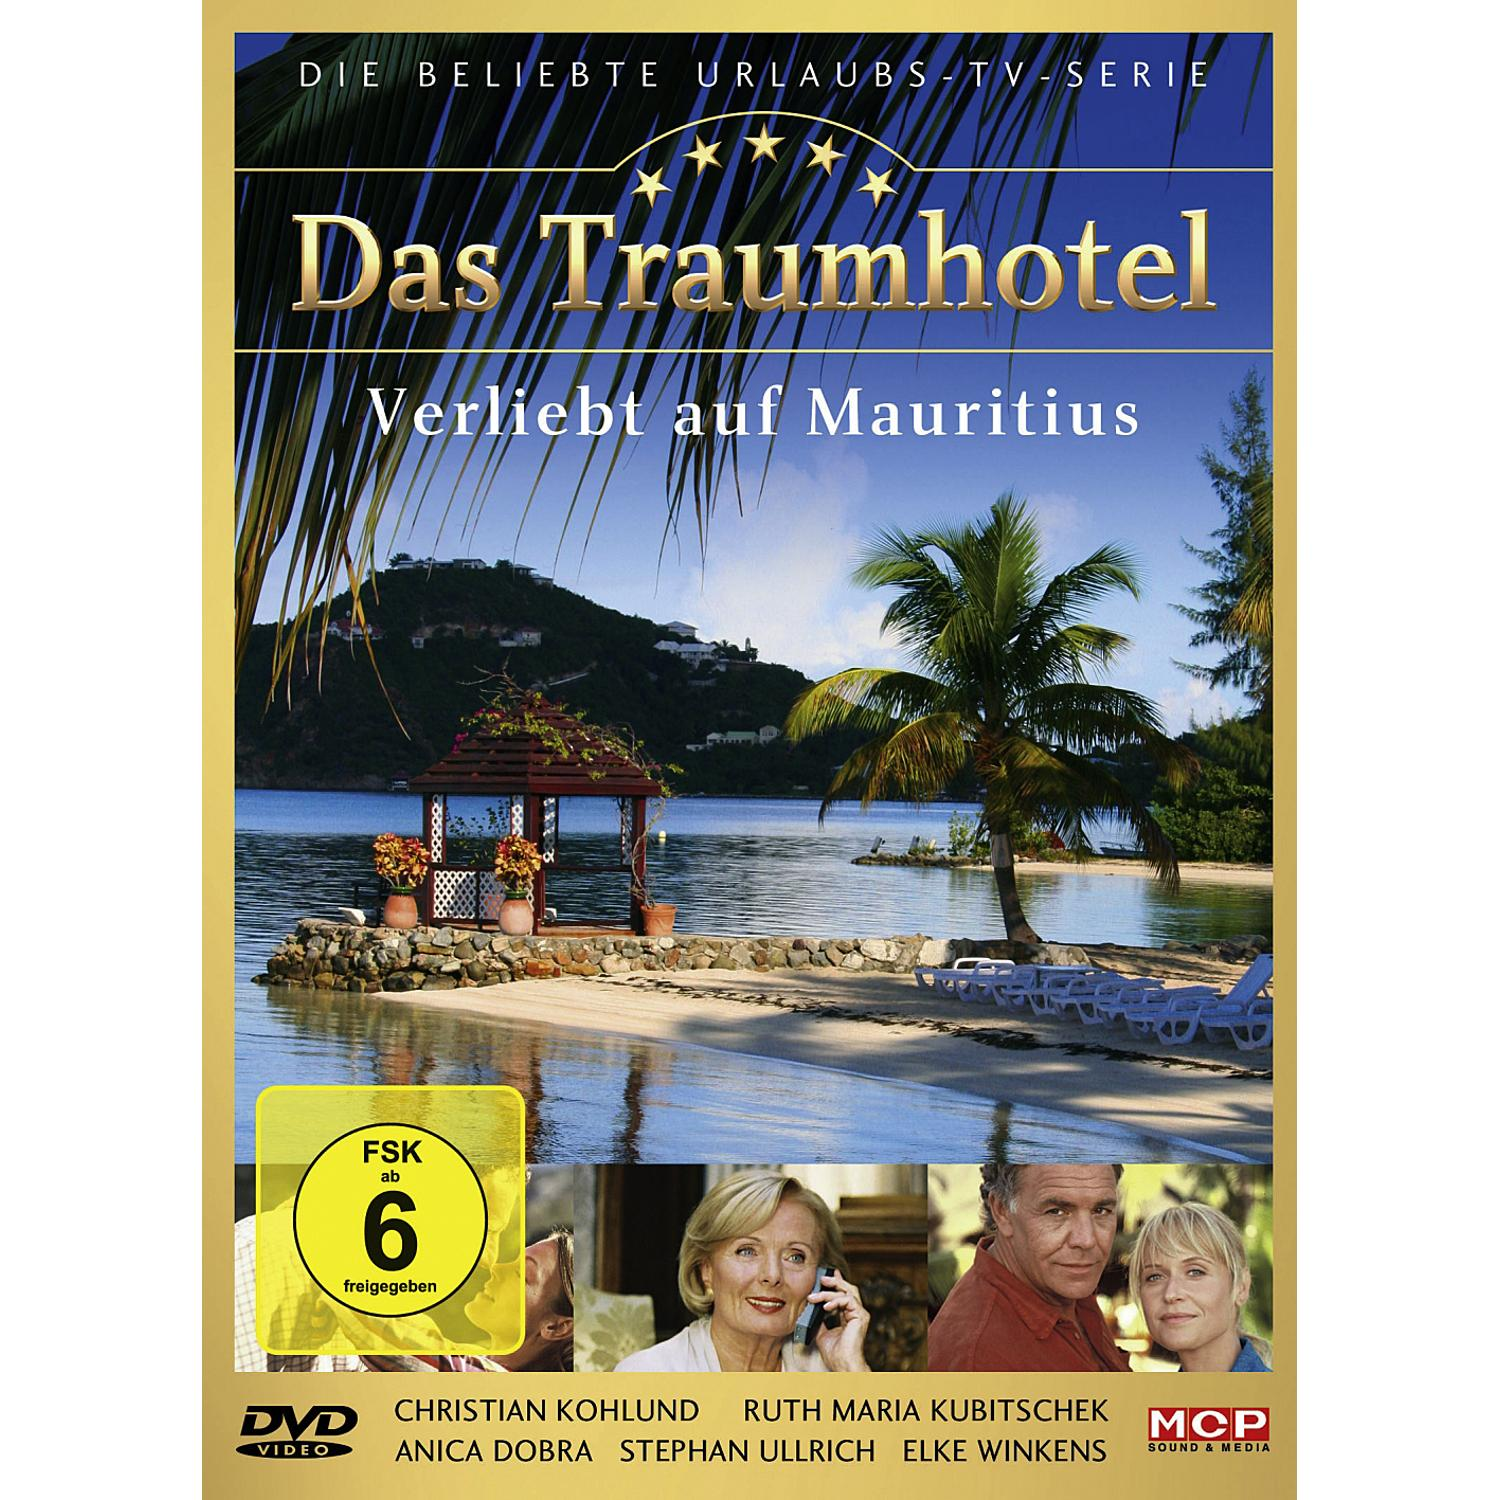 auf Verliebt DVD Traumhotel: Mauritius Das